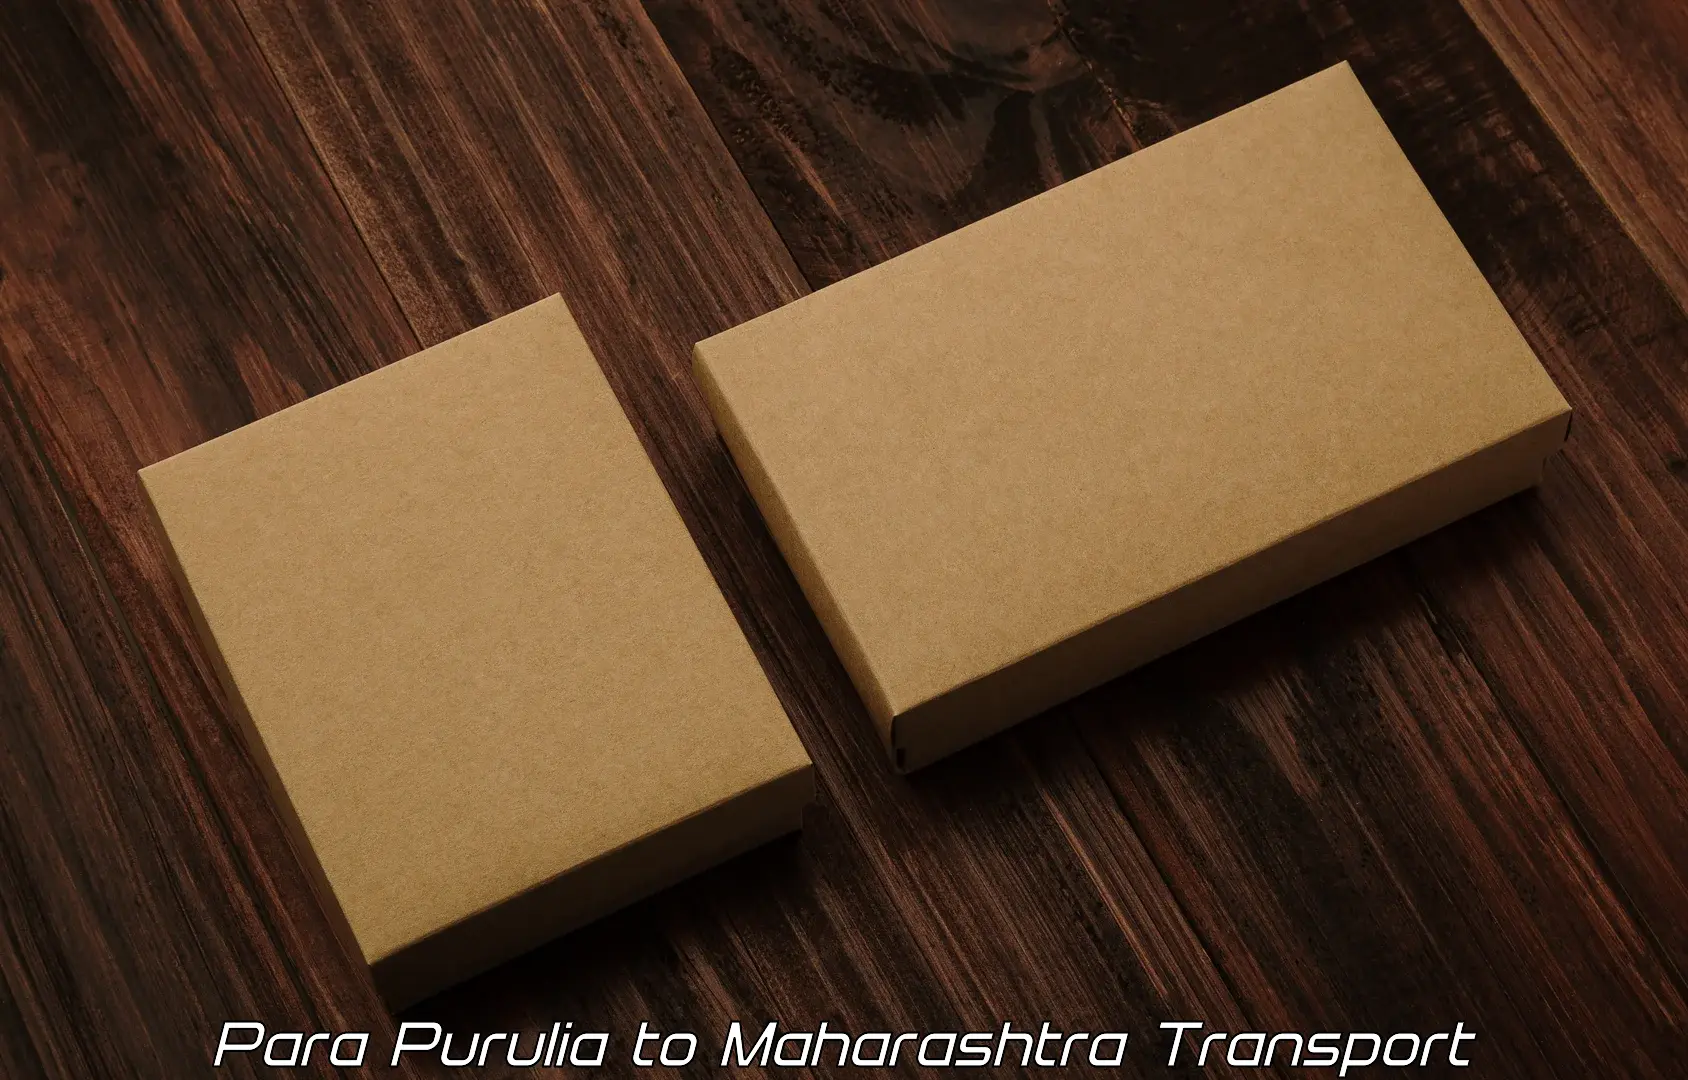 Cargo transportation services Para Purulia to Maharashtra